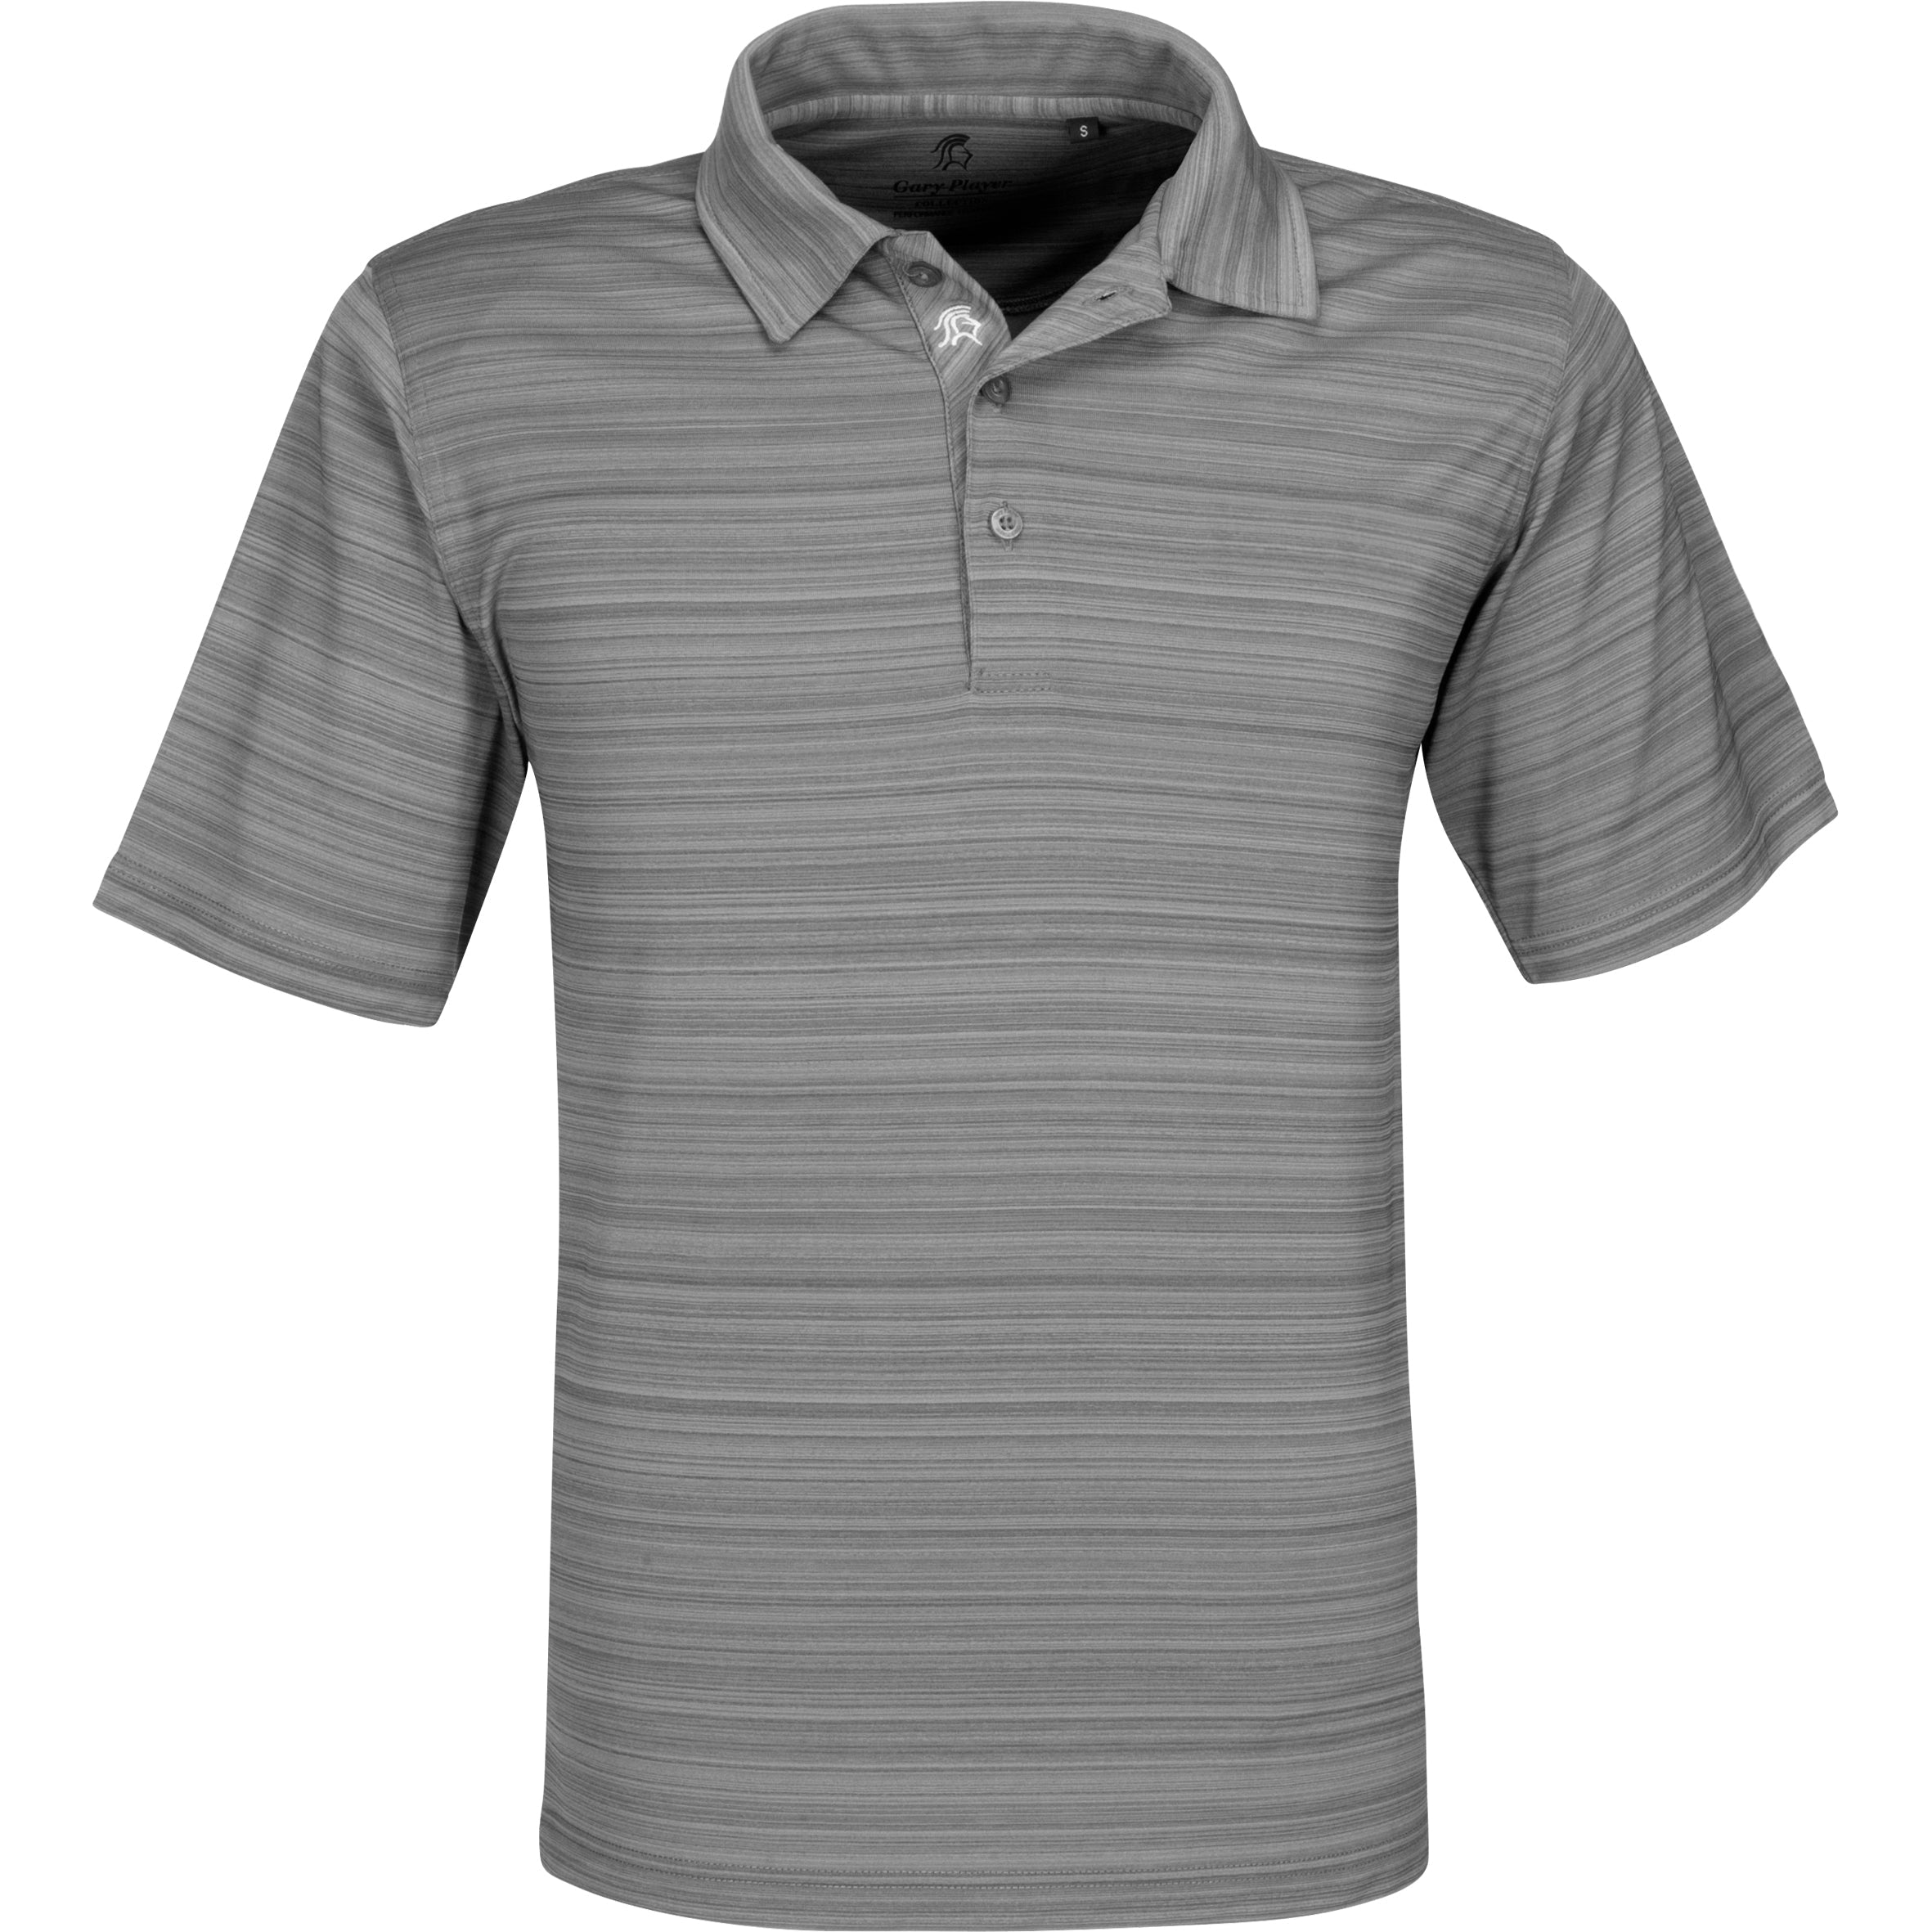 Mens Astoria Golf Shirt - Light Blue Only-L-Grey-GY